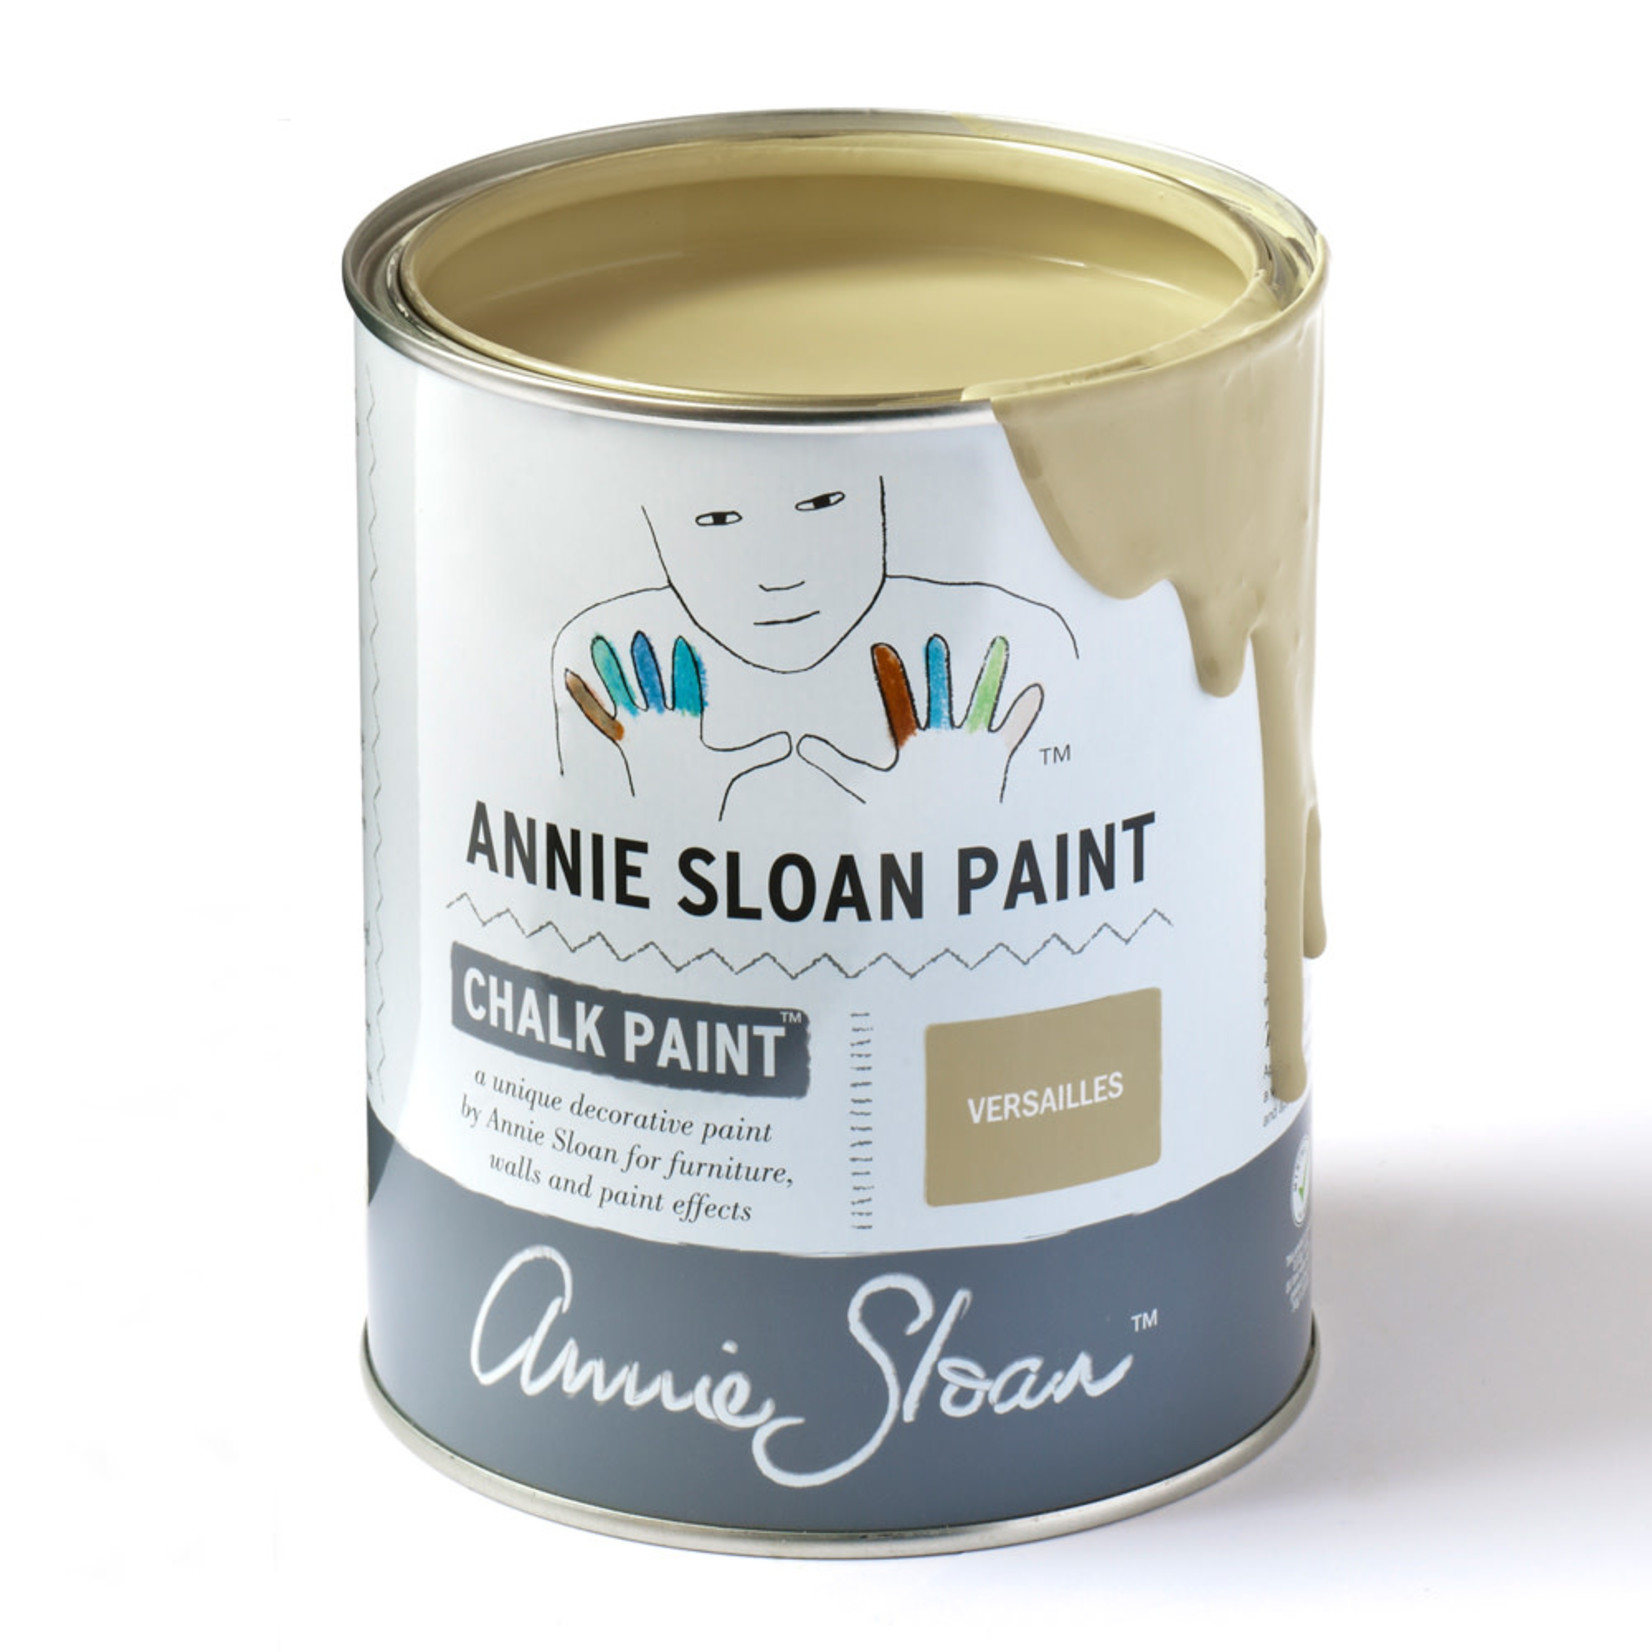 Annie Sloan Chalk Paint 1 Litre Versailles